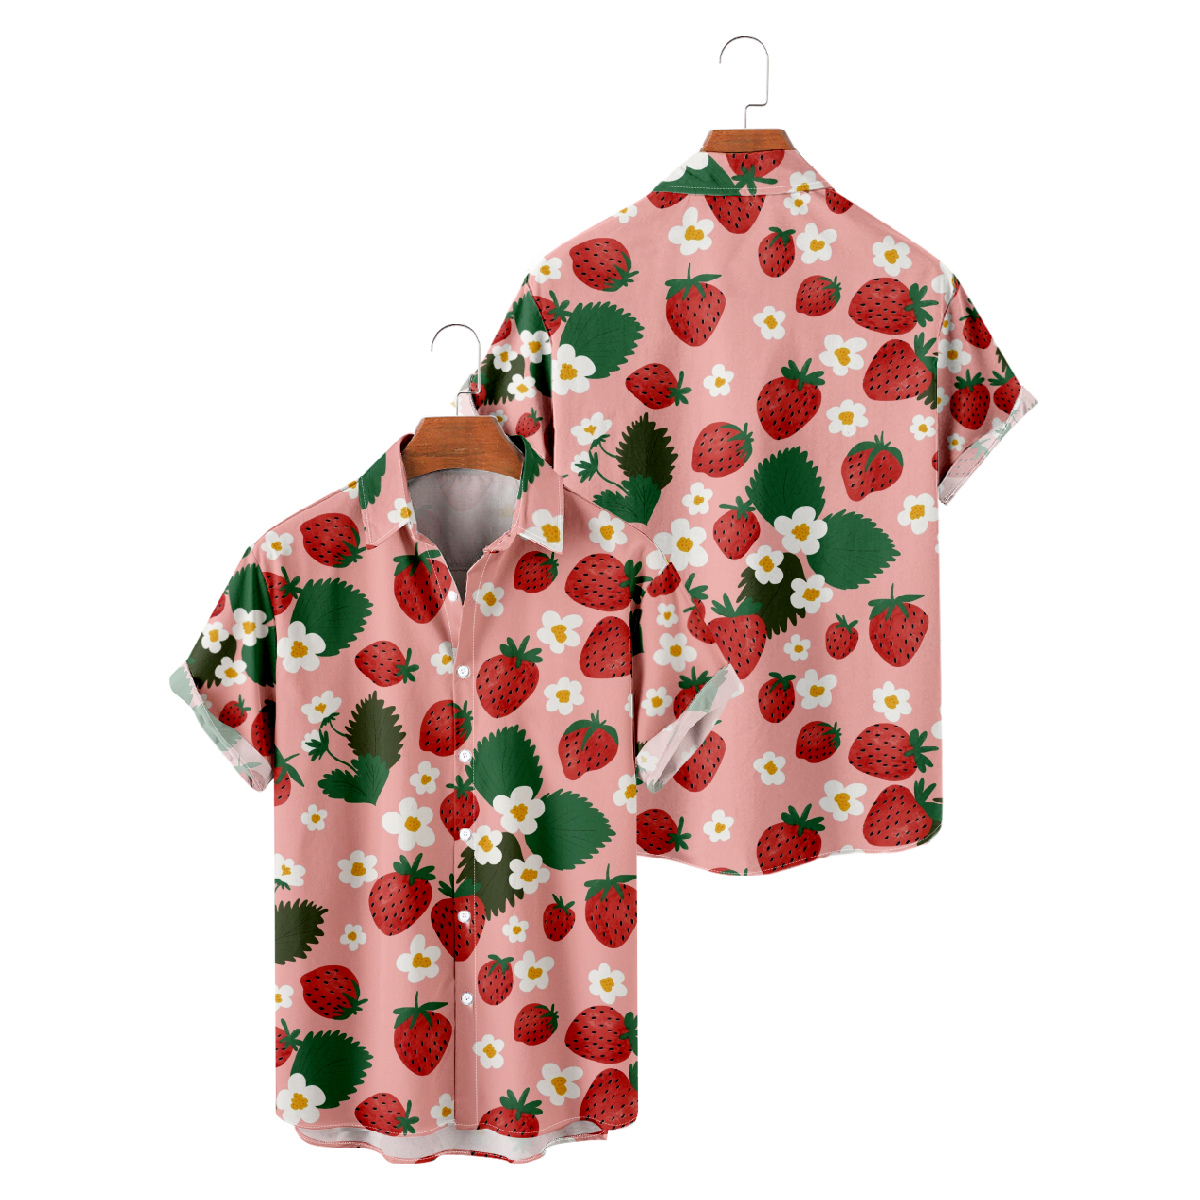 Strawberry Hawaiian Shirt Men's Short Sleeve Shirt Button Up Straight Collar Summer Tops